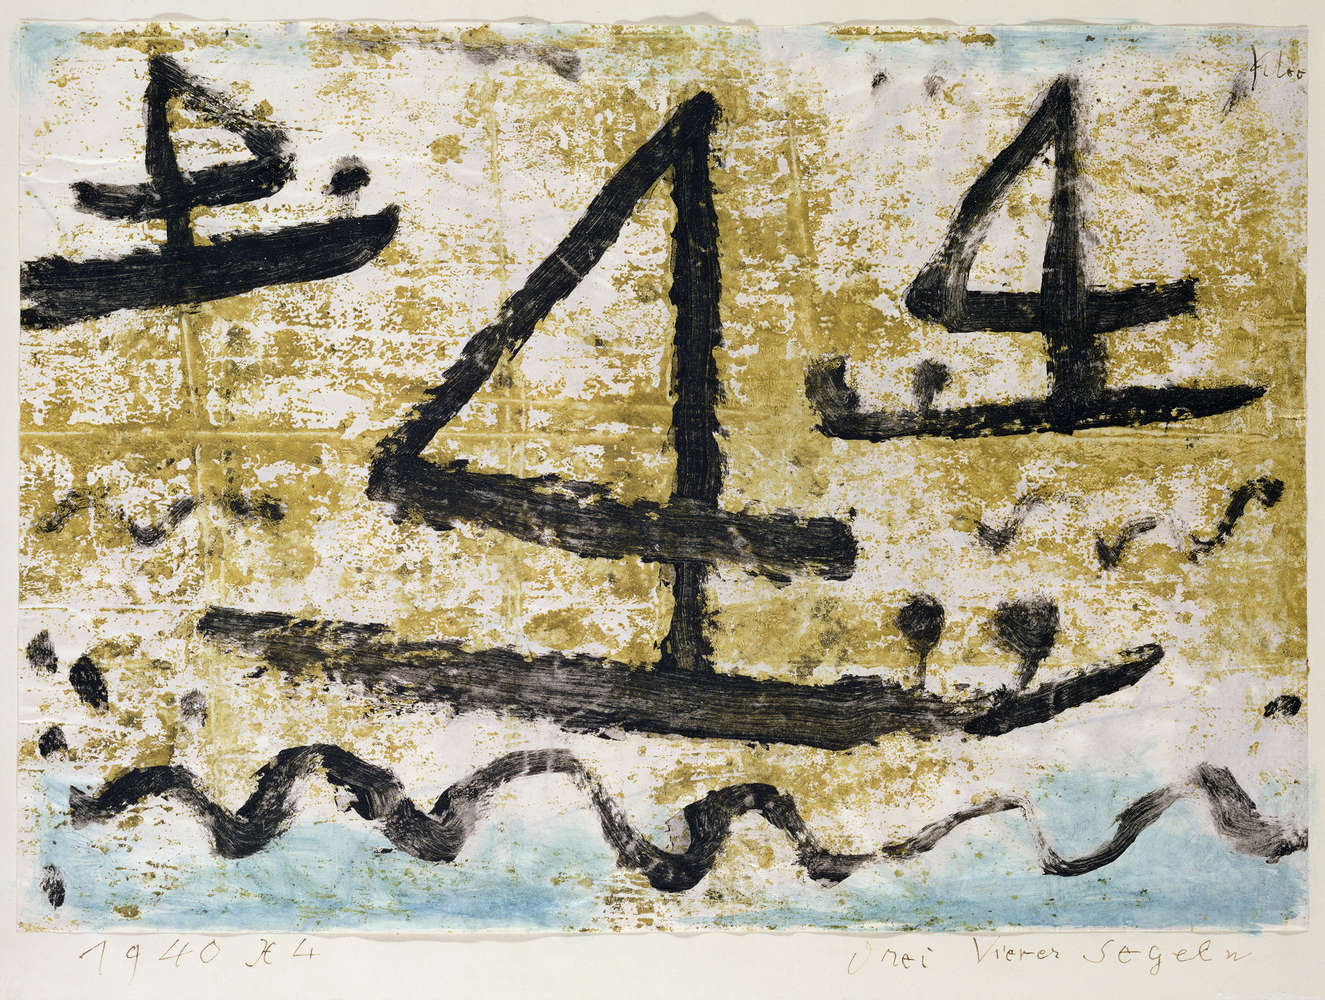             Papier peint panoramique "Voiliers" de Paul Klee
        